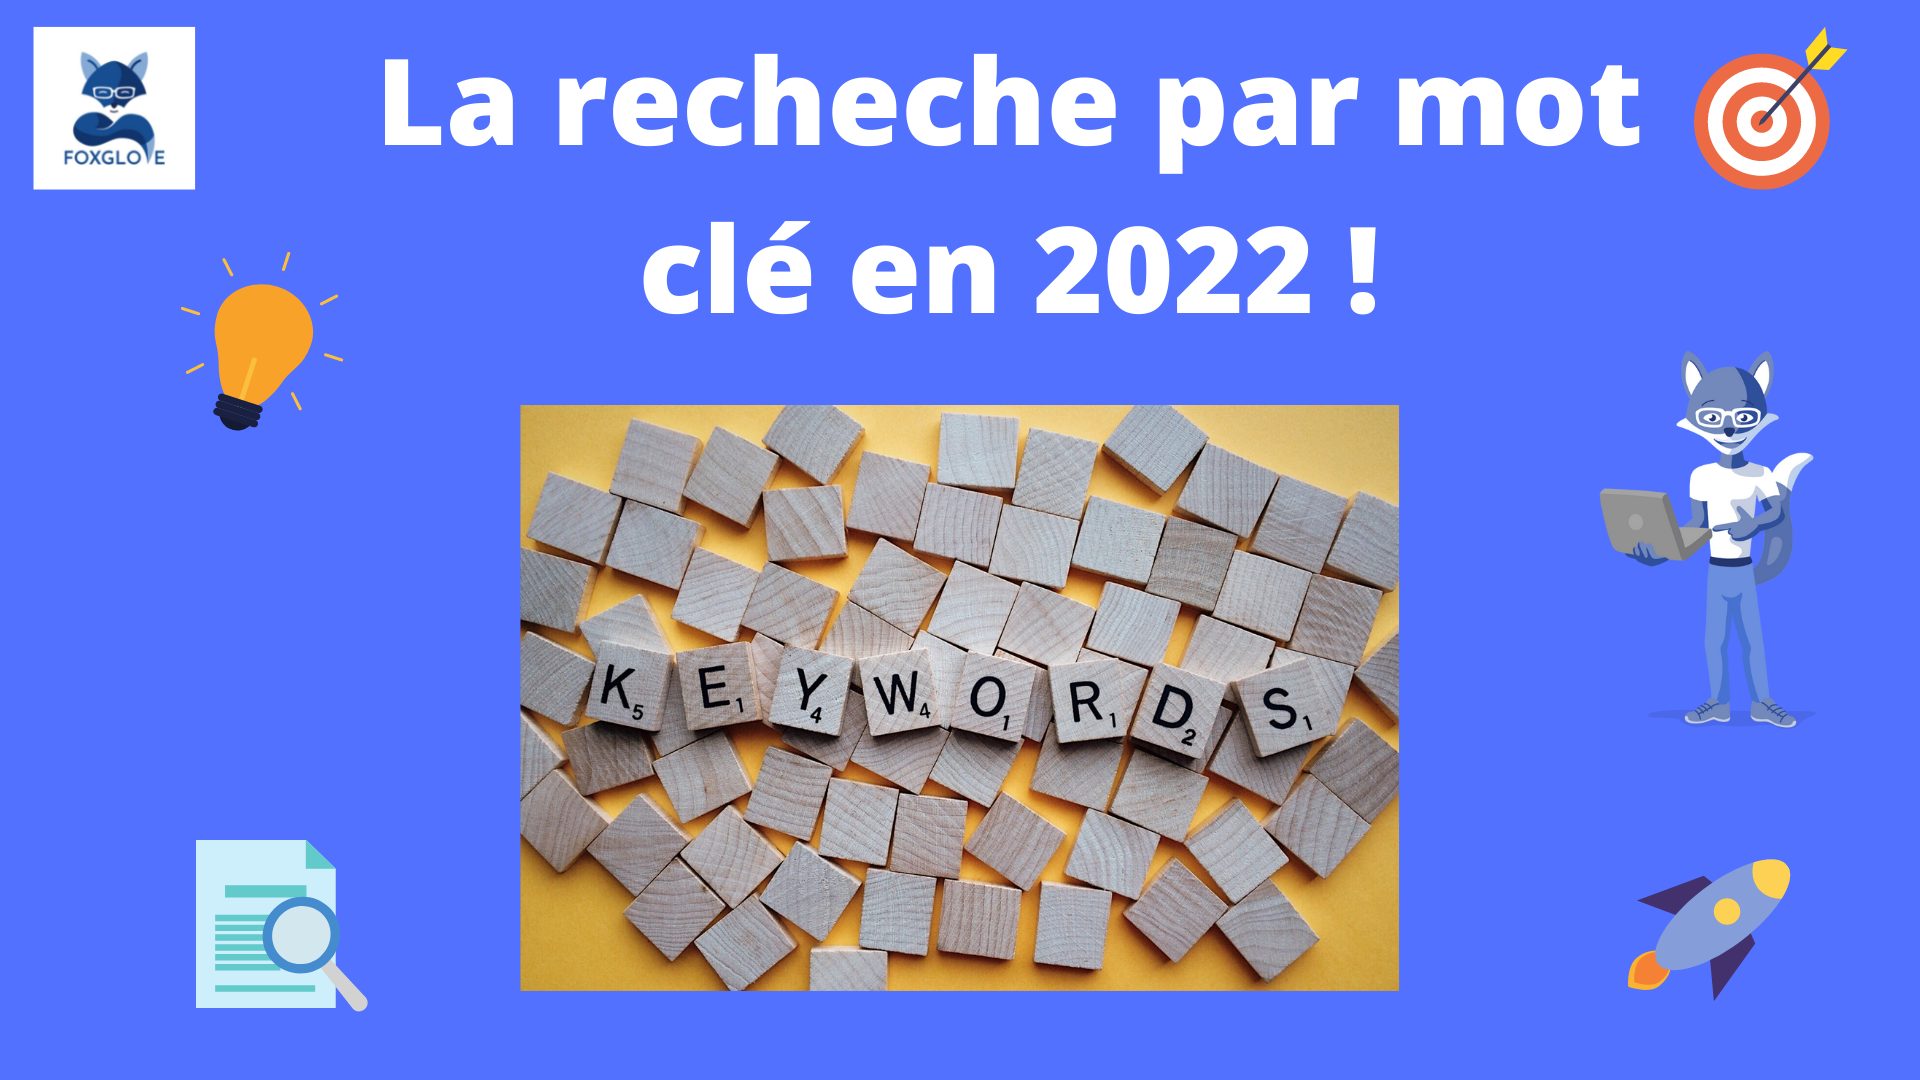 La recherche par mot clé est elle toujours pertinente en 2022 dans votre stratégie SEO ?